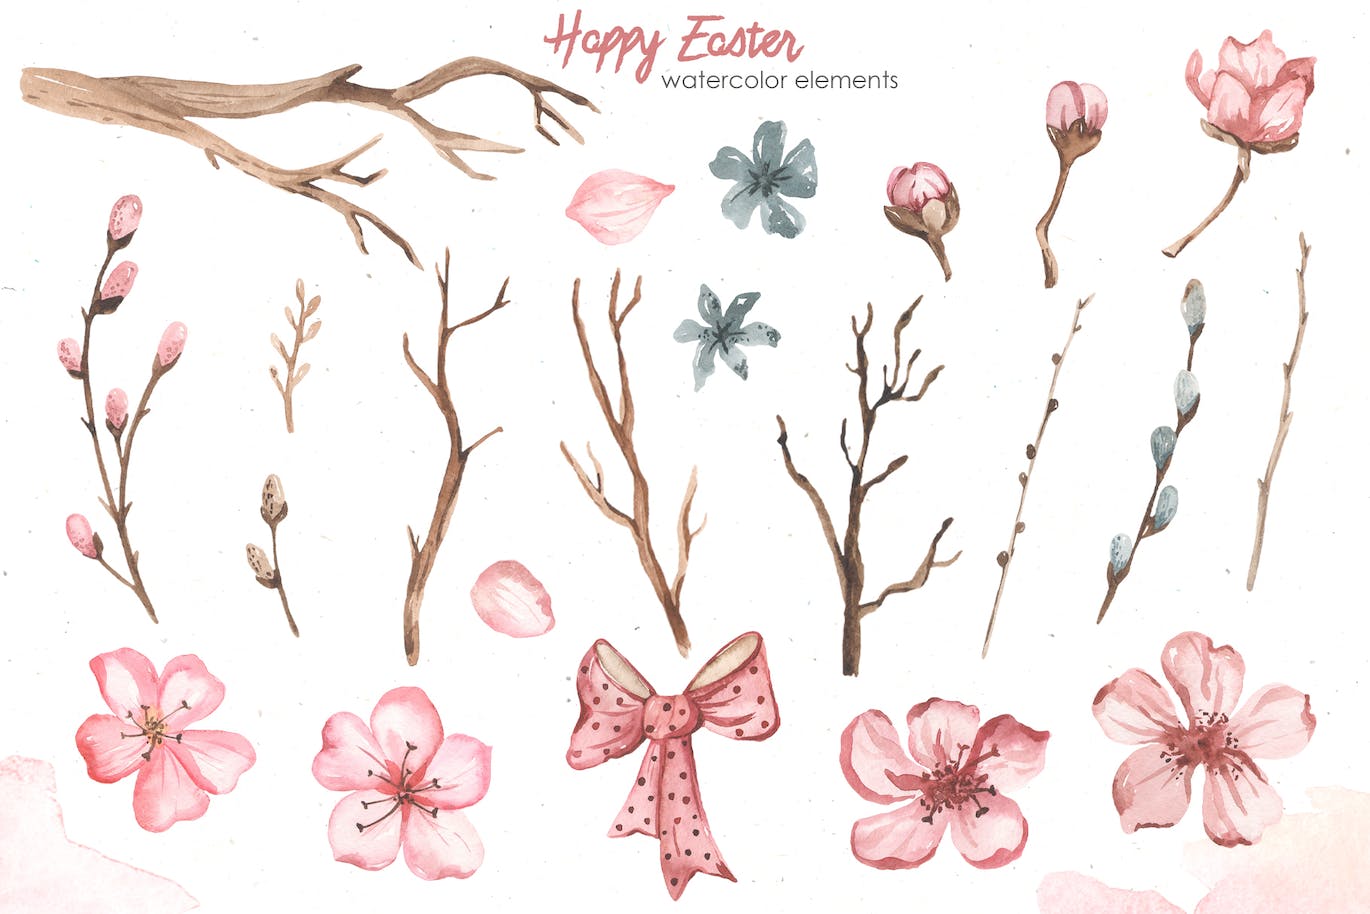 复活节快乐元素水彩画集 Happy Easter watercolor APP UI 第6张